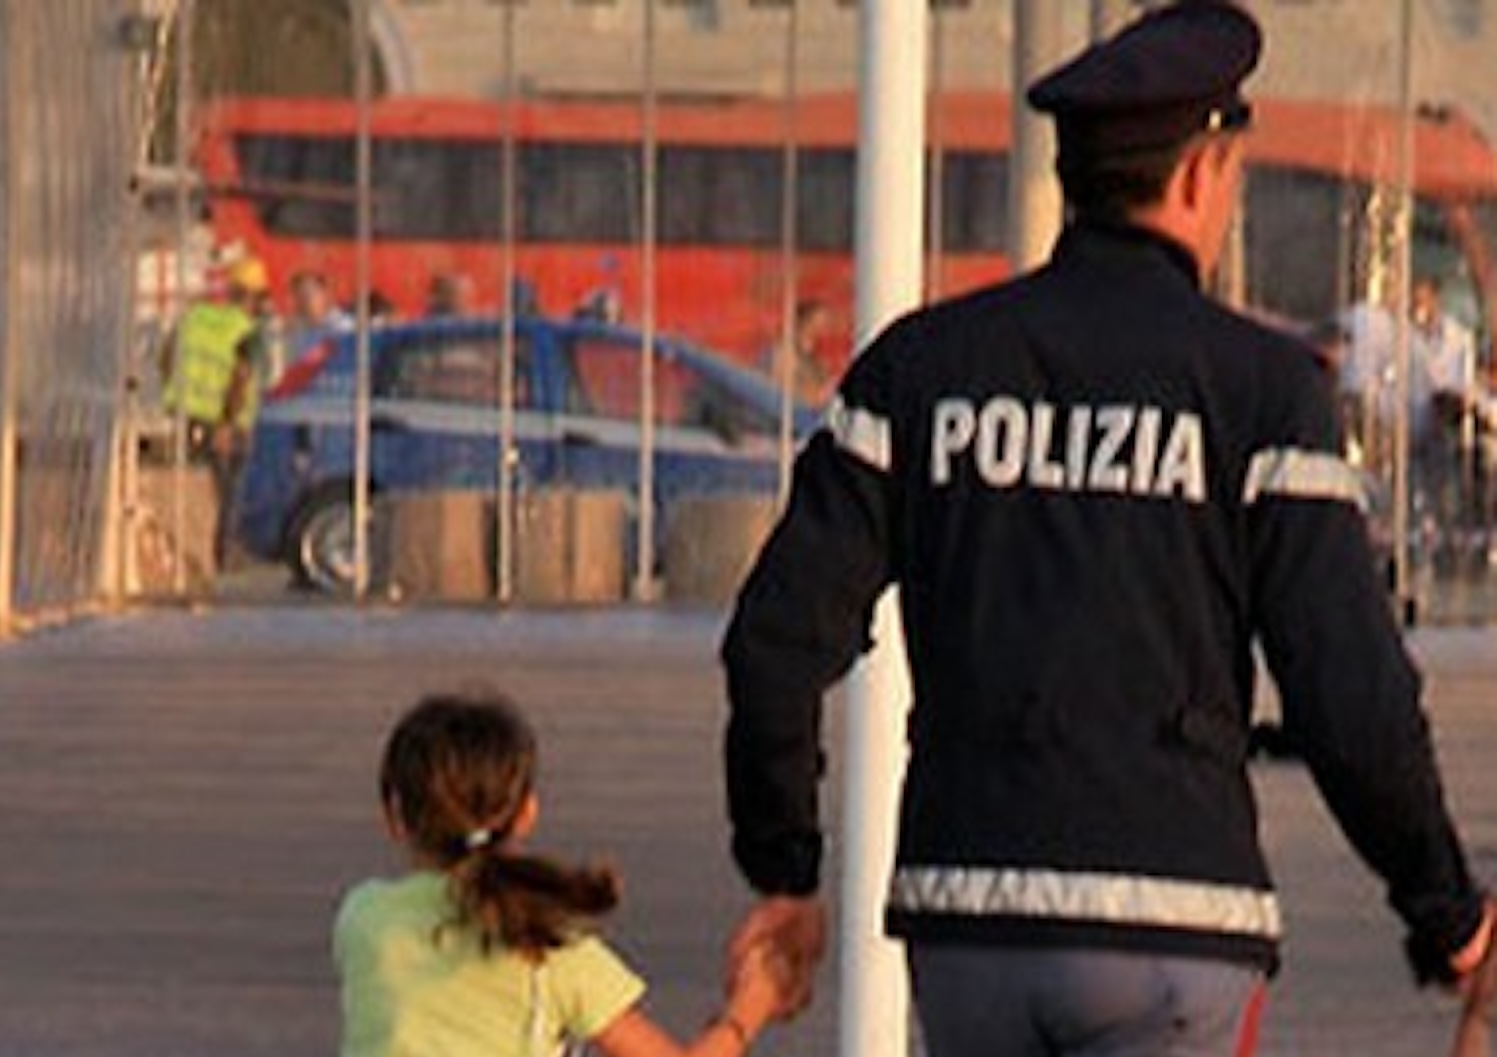 Una bambina di cinque anni è stata trovata vagante da sola a Mondragone. Un barista l'ha accolta nel suo locale e la polizia si sta occupando del caso. Il deputato Francesco Emilio Borrelli condanna l'abbandono come atto inaccettabile.